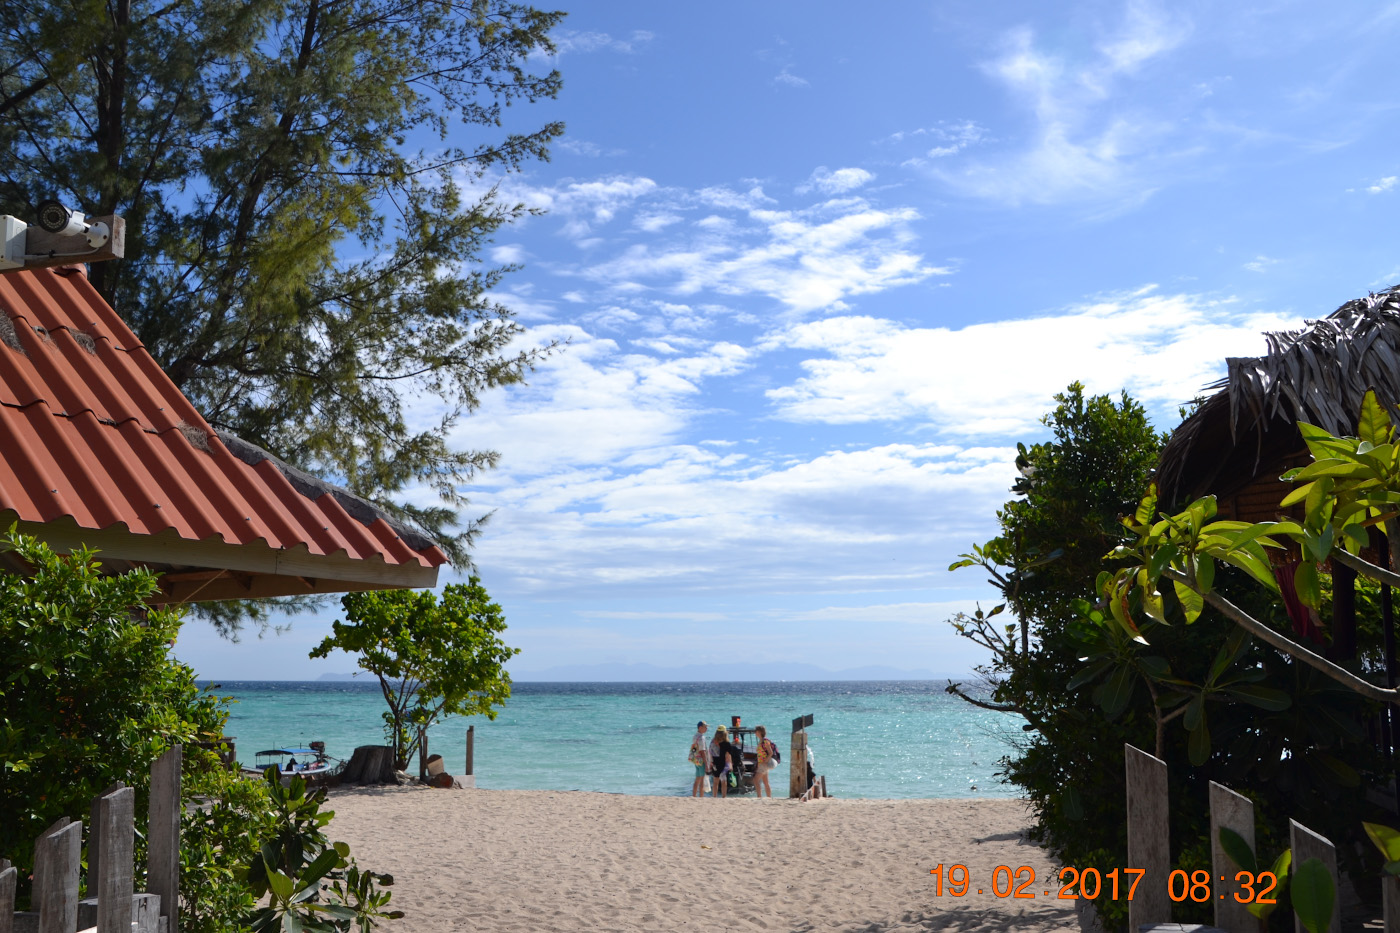 Фото 1. Вид на пляж Санрайз на острове Ко Липе. Советы туристам, собирающимся на пляжный отдых в Таиланде. Камера Nikon D3100 с объективом Tamron 18-270mm f/3.5-6.3. Настройки: выдержка 1/500, f/11, ISO 100, ФР=55 мм.